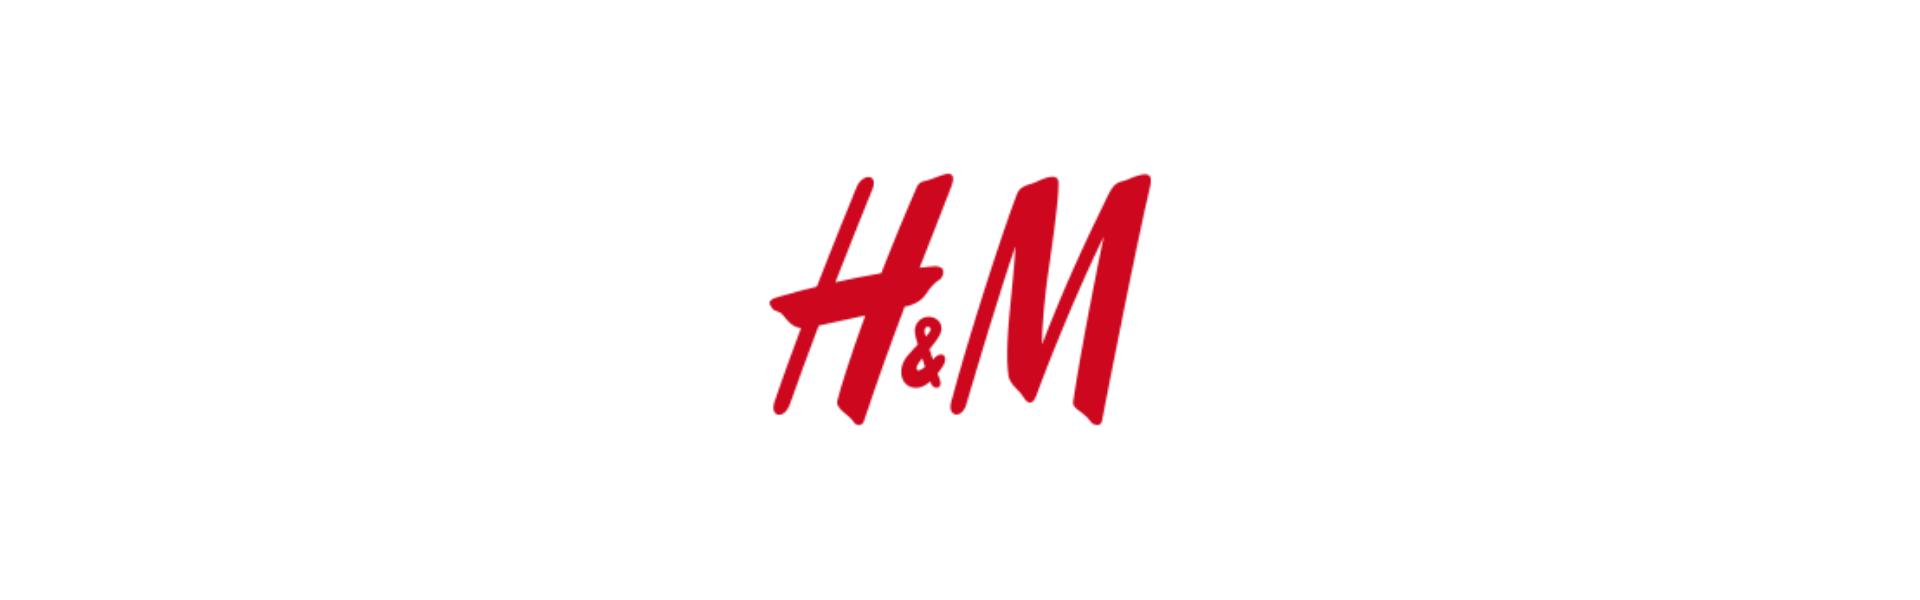 Н дем. H M эмблема. Эйч энд эм логотип. Логотип магазина h and m. H&M картинки.